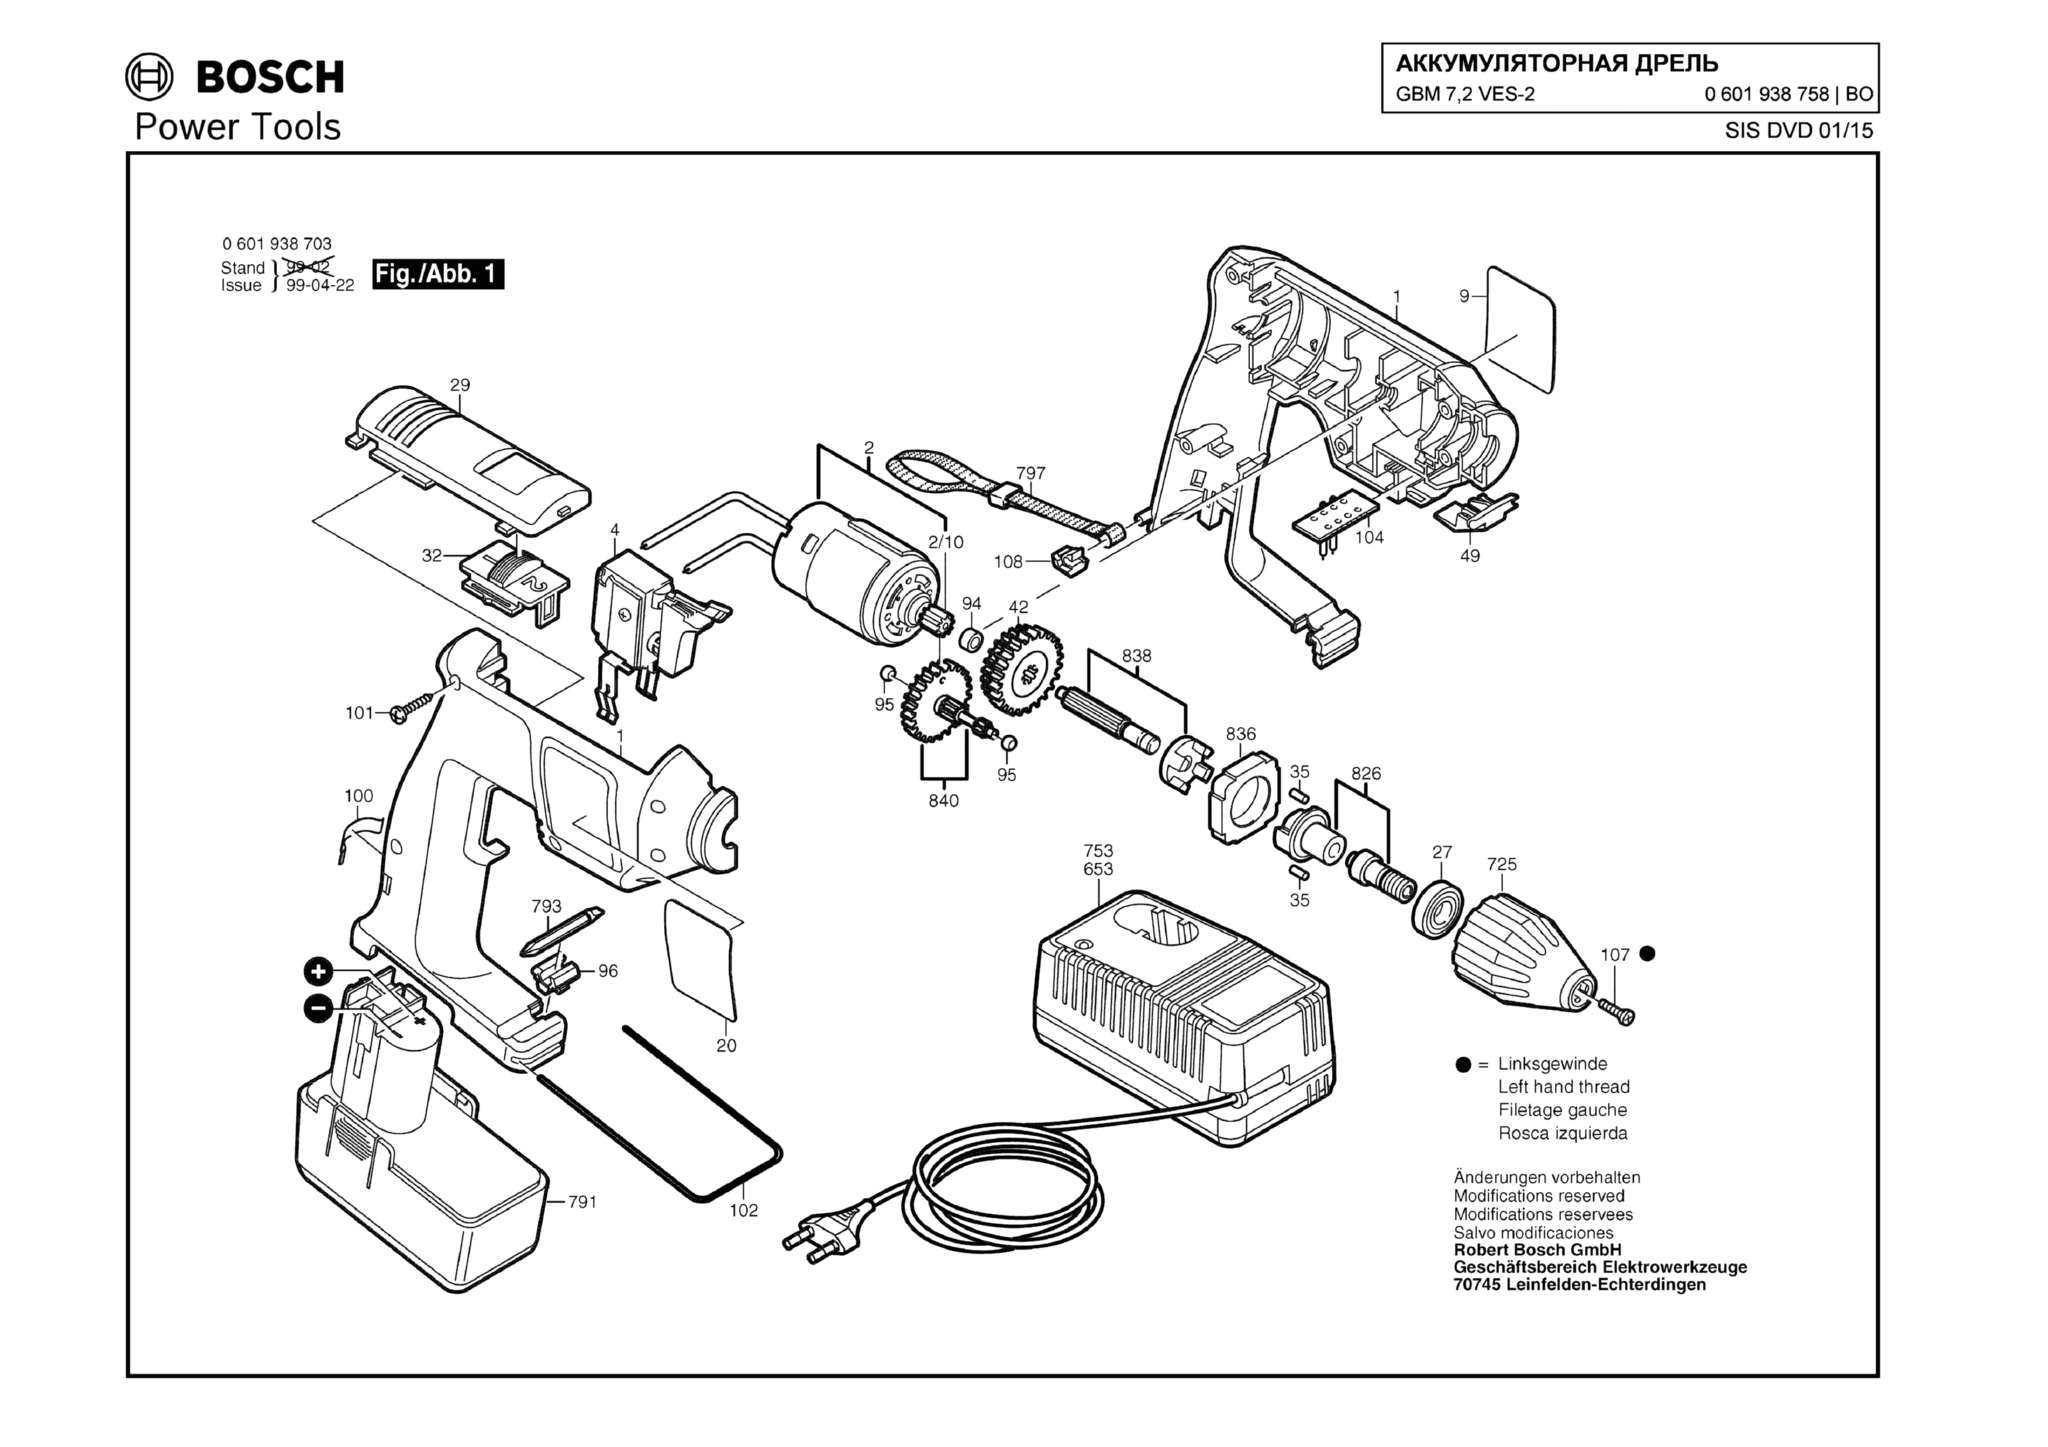 Запчасти, схема и деталировка Bosch GBM 7,2 VES-2 (ТИП 0601938758)